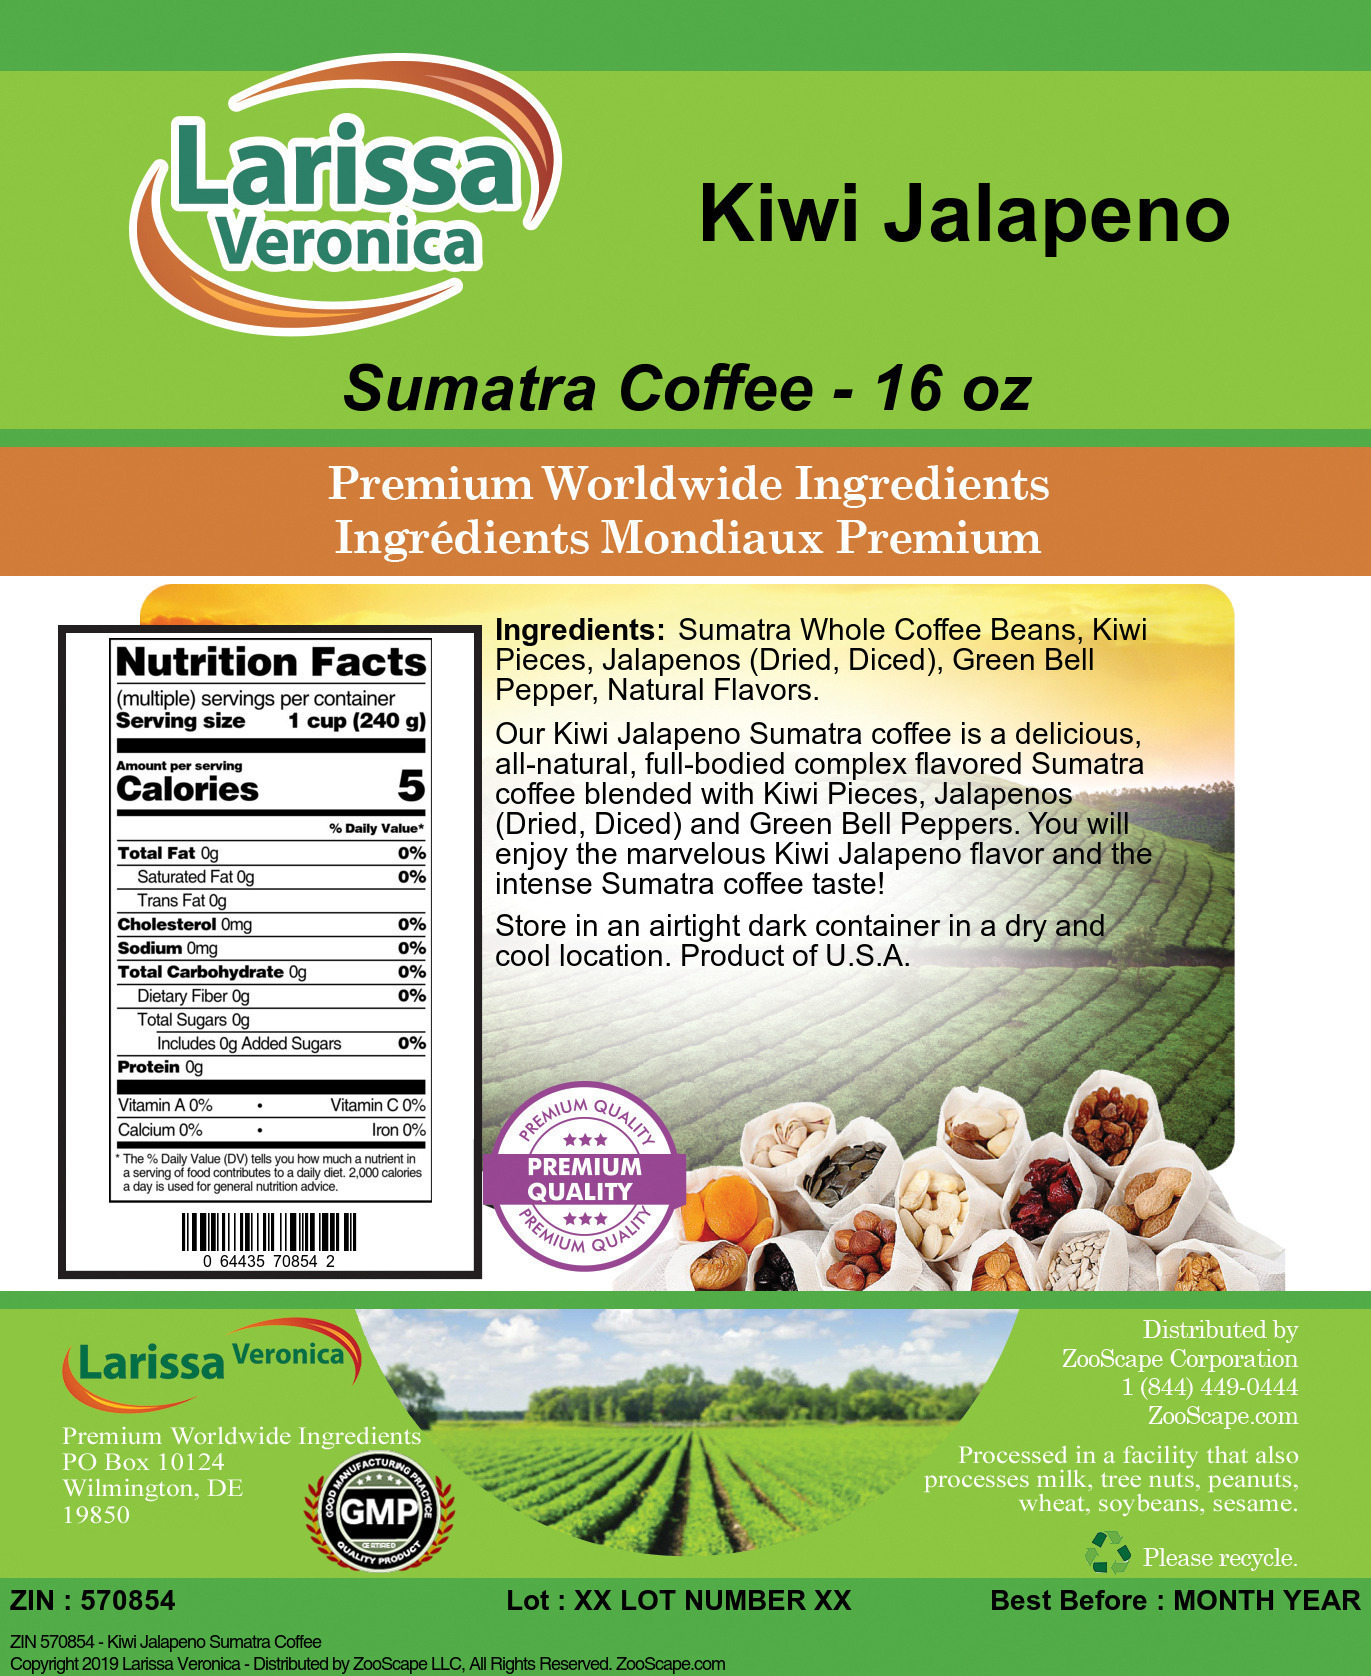 Kiwi Jalapeno Sumatra Coffee - Label